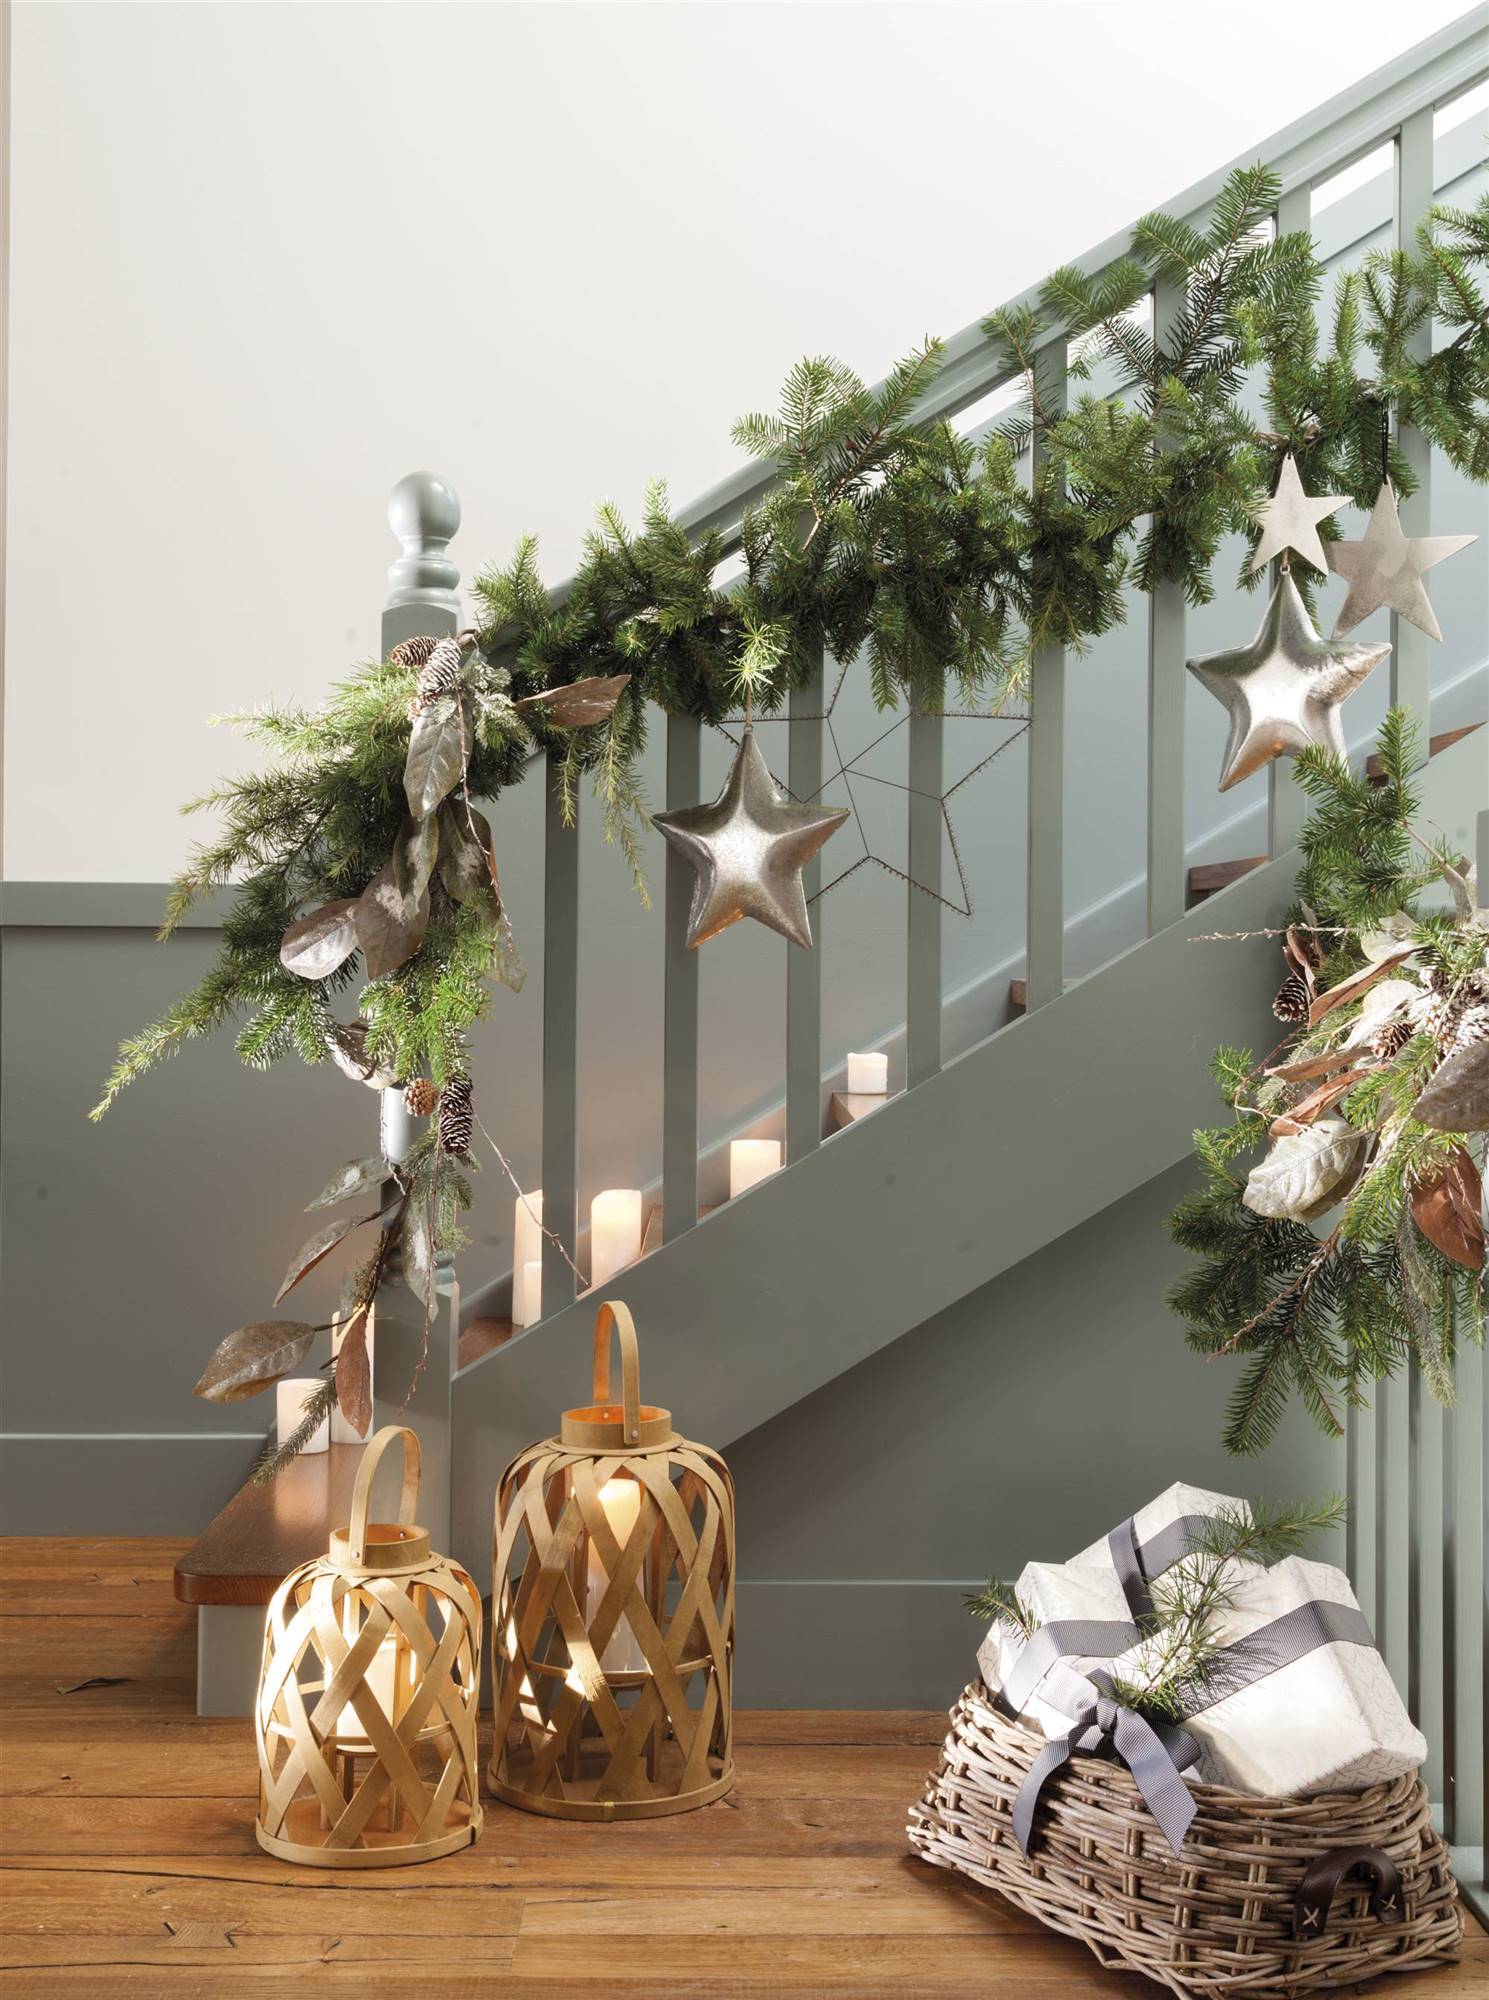 Escaleras decoradas por navidad 